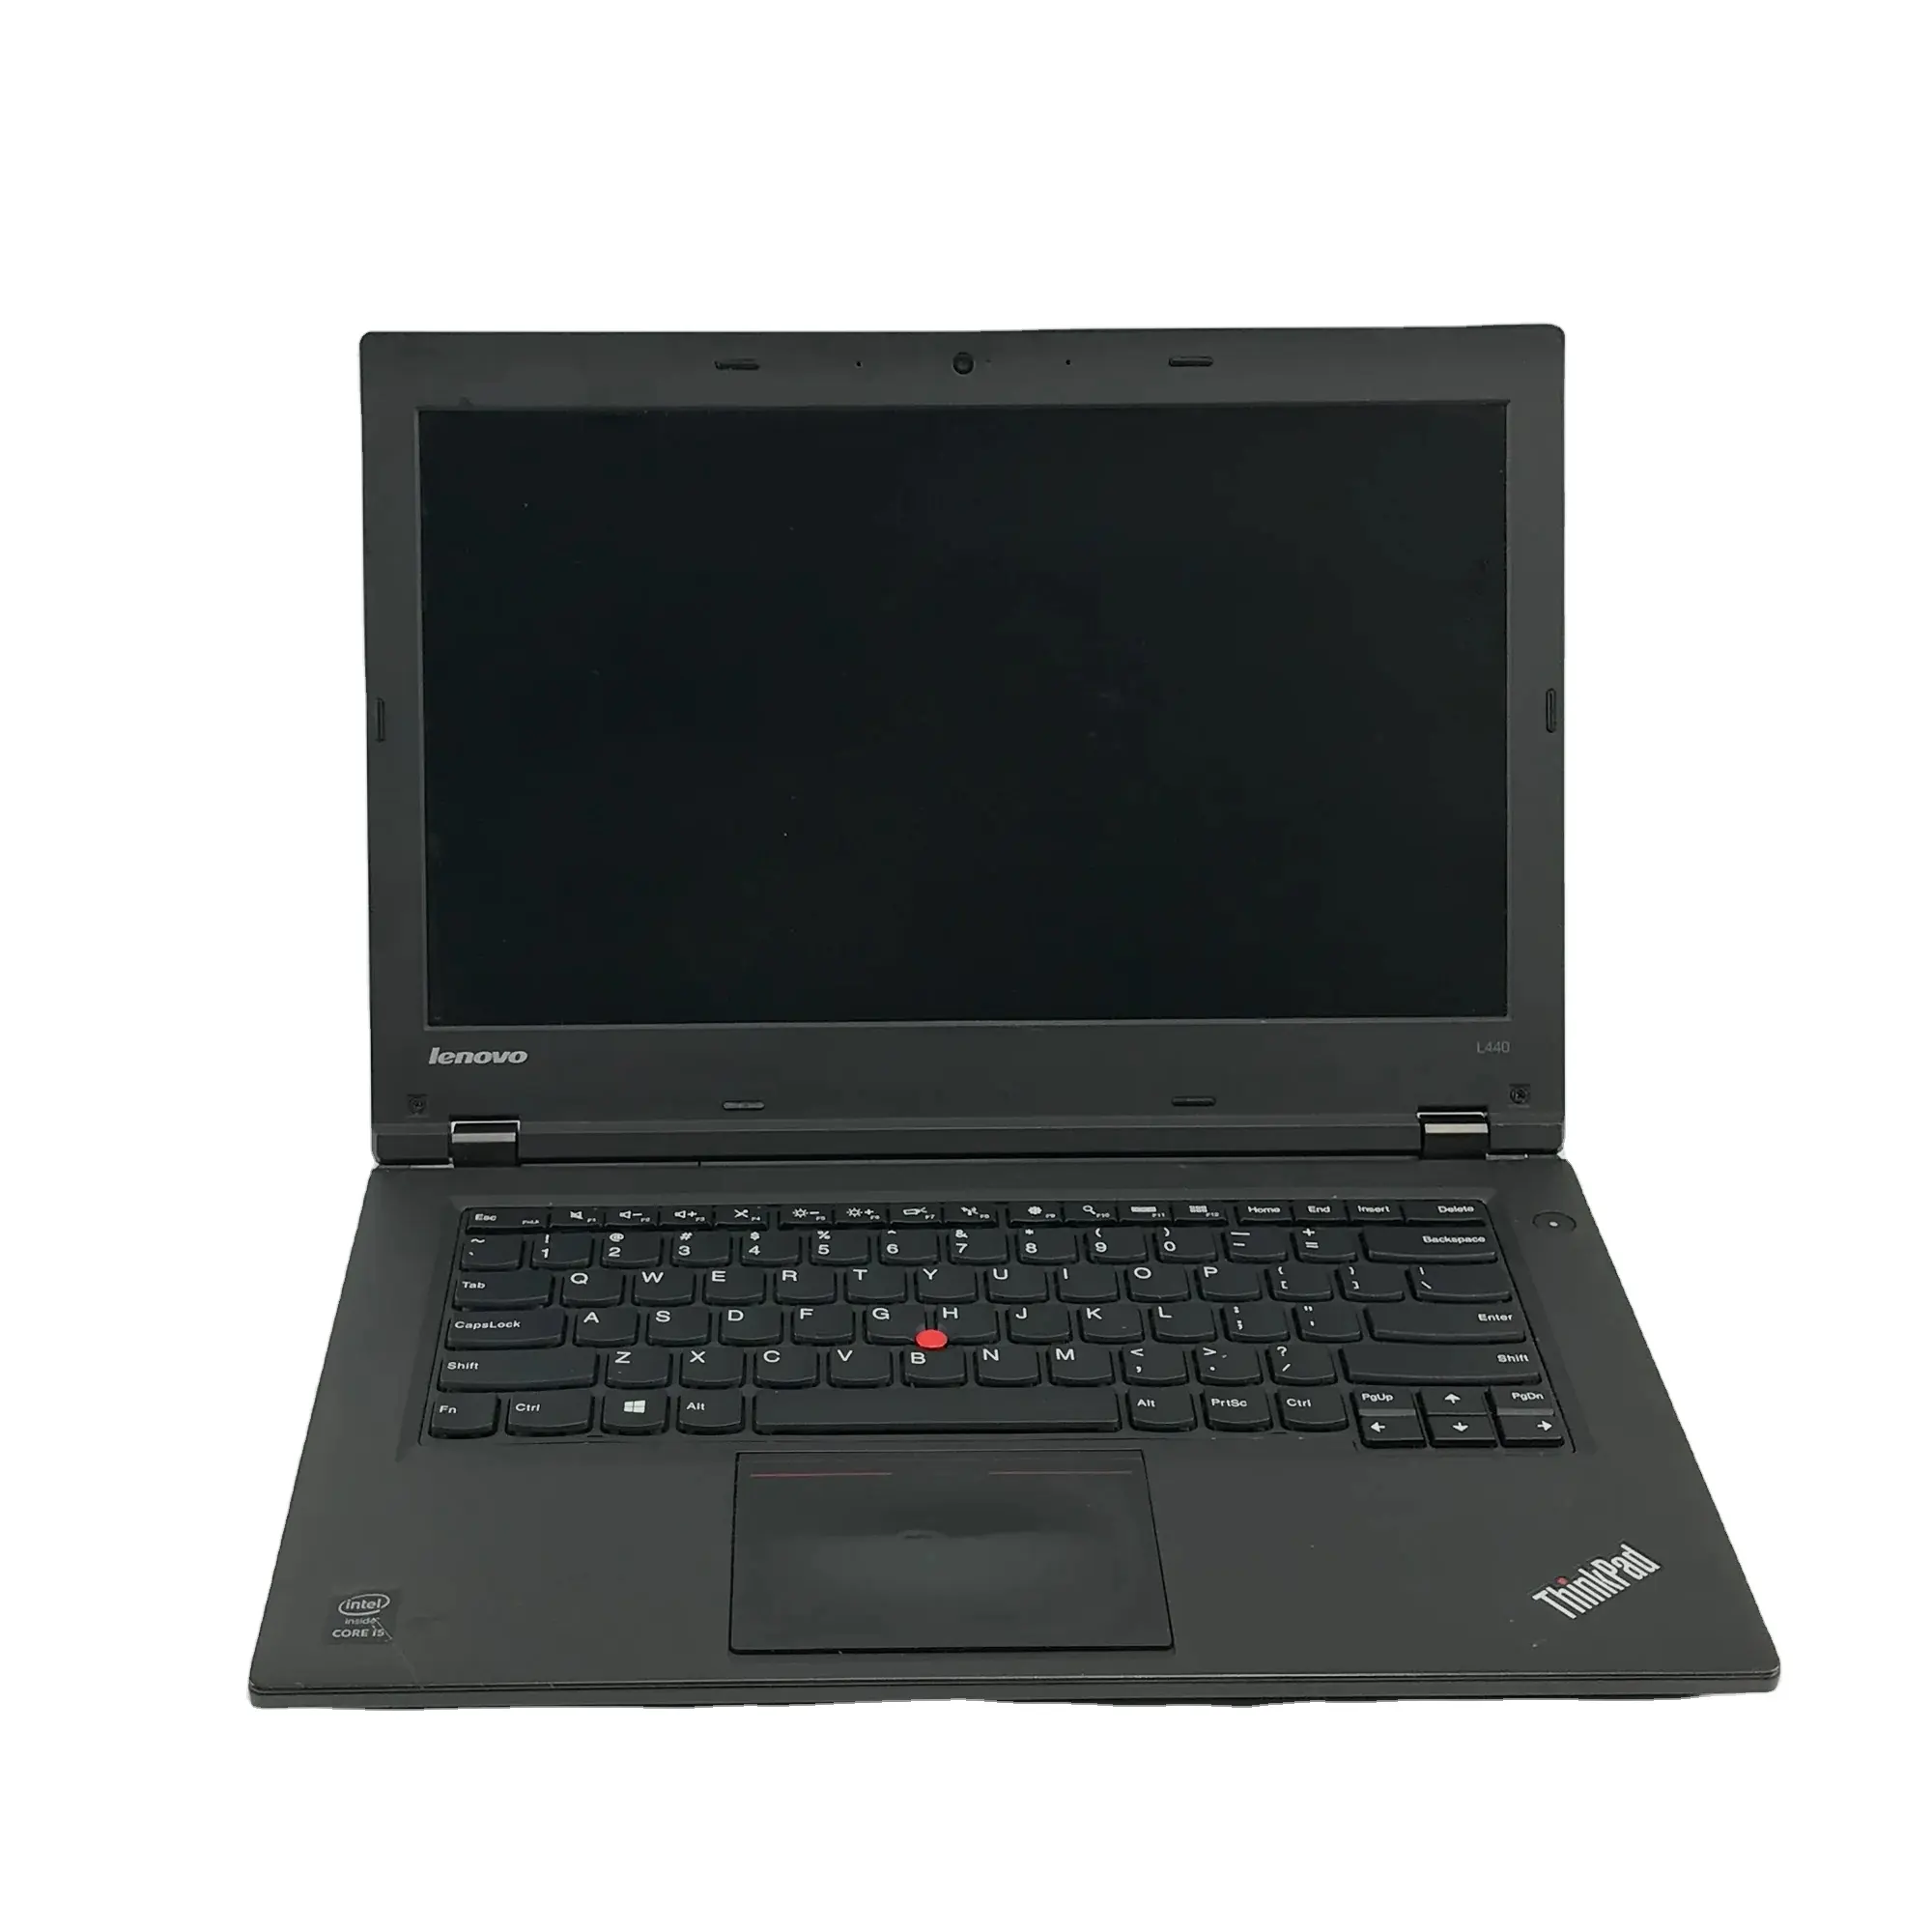 Melhor Condicionado ThinkPad L440 14 "i5-4200M 2.6GHz 4GB RAM 500GB HDD Laptops Ideal para Melhores Opções de Computação dos EUA